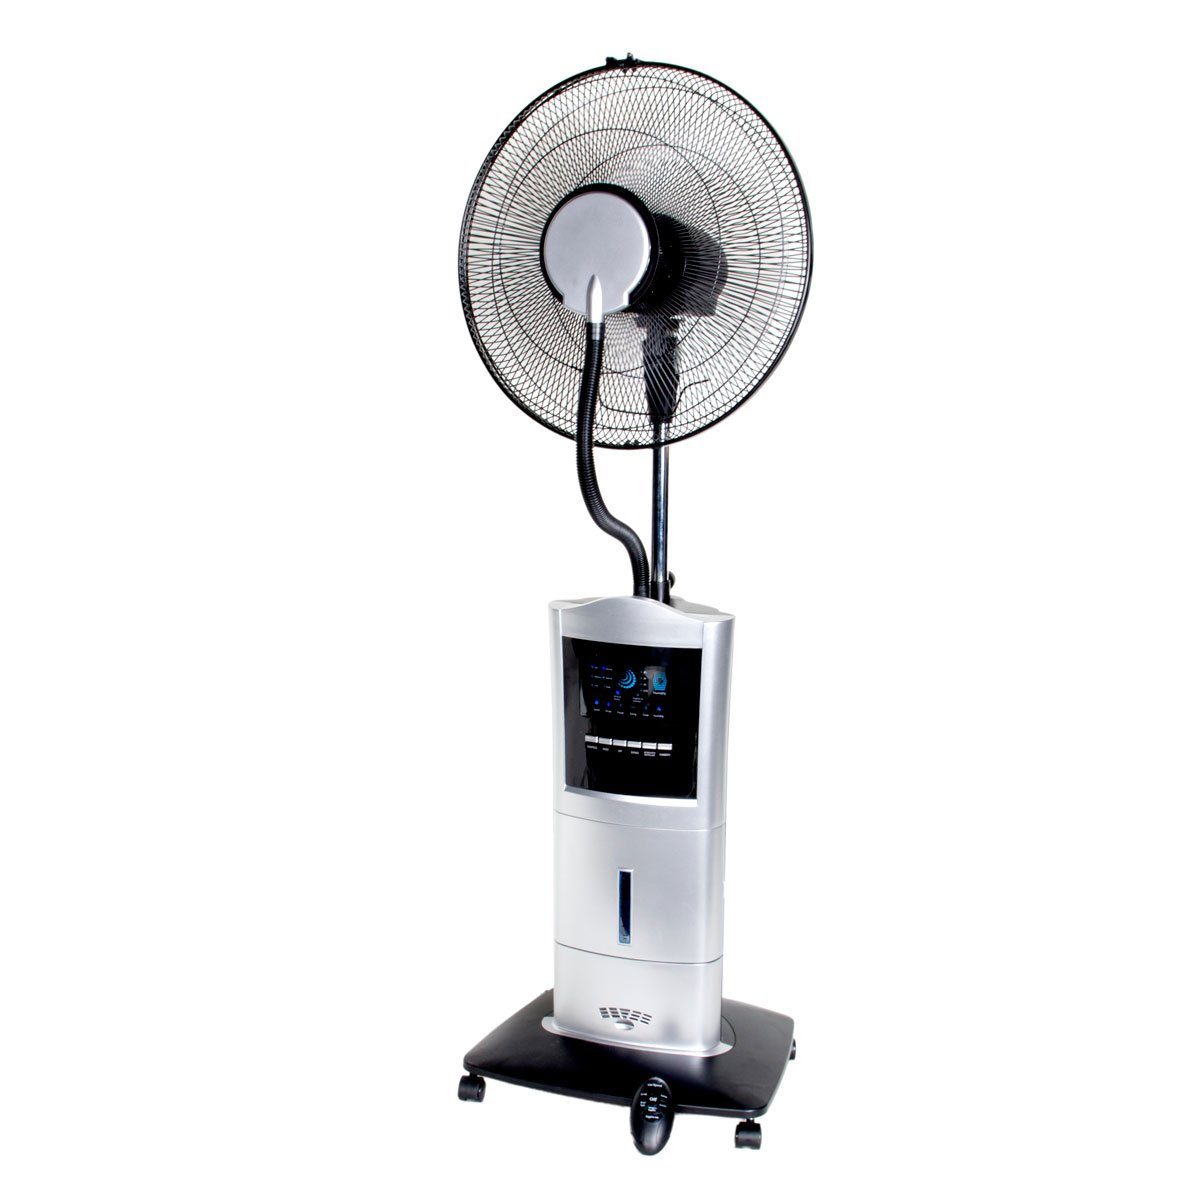 BRAST Standventilator Ventilator mit Sprühnebel Luftbefeuchter Anti-Mücken Funktion